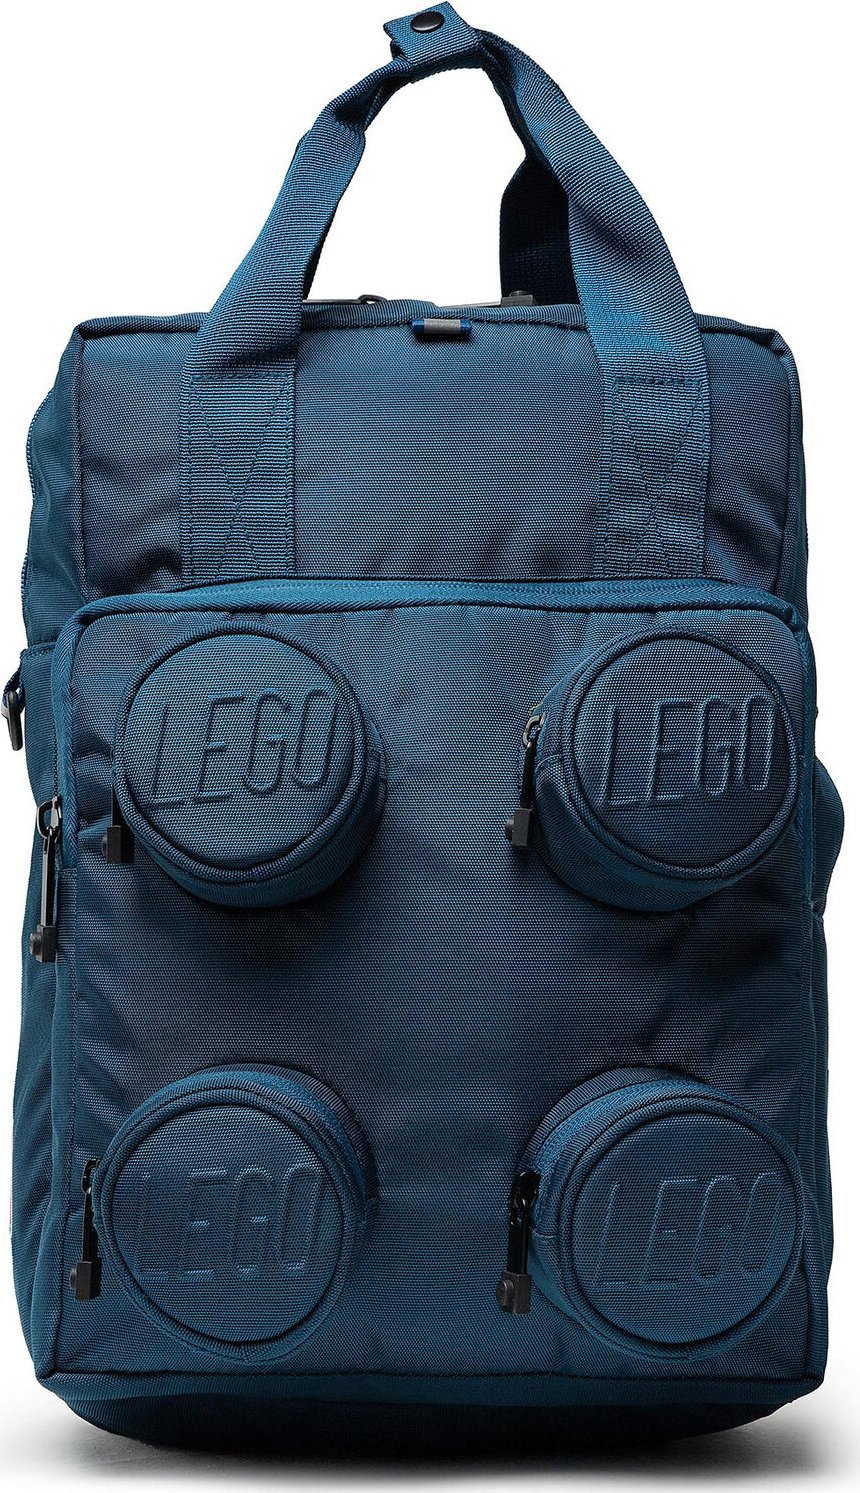 Batoh LEGO Brick 2x2 Backpack 20205-0140 Earth Blue